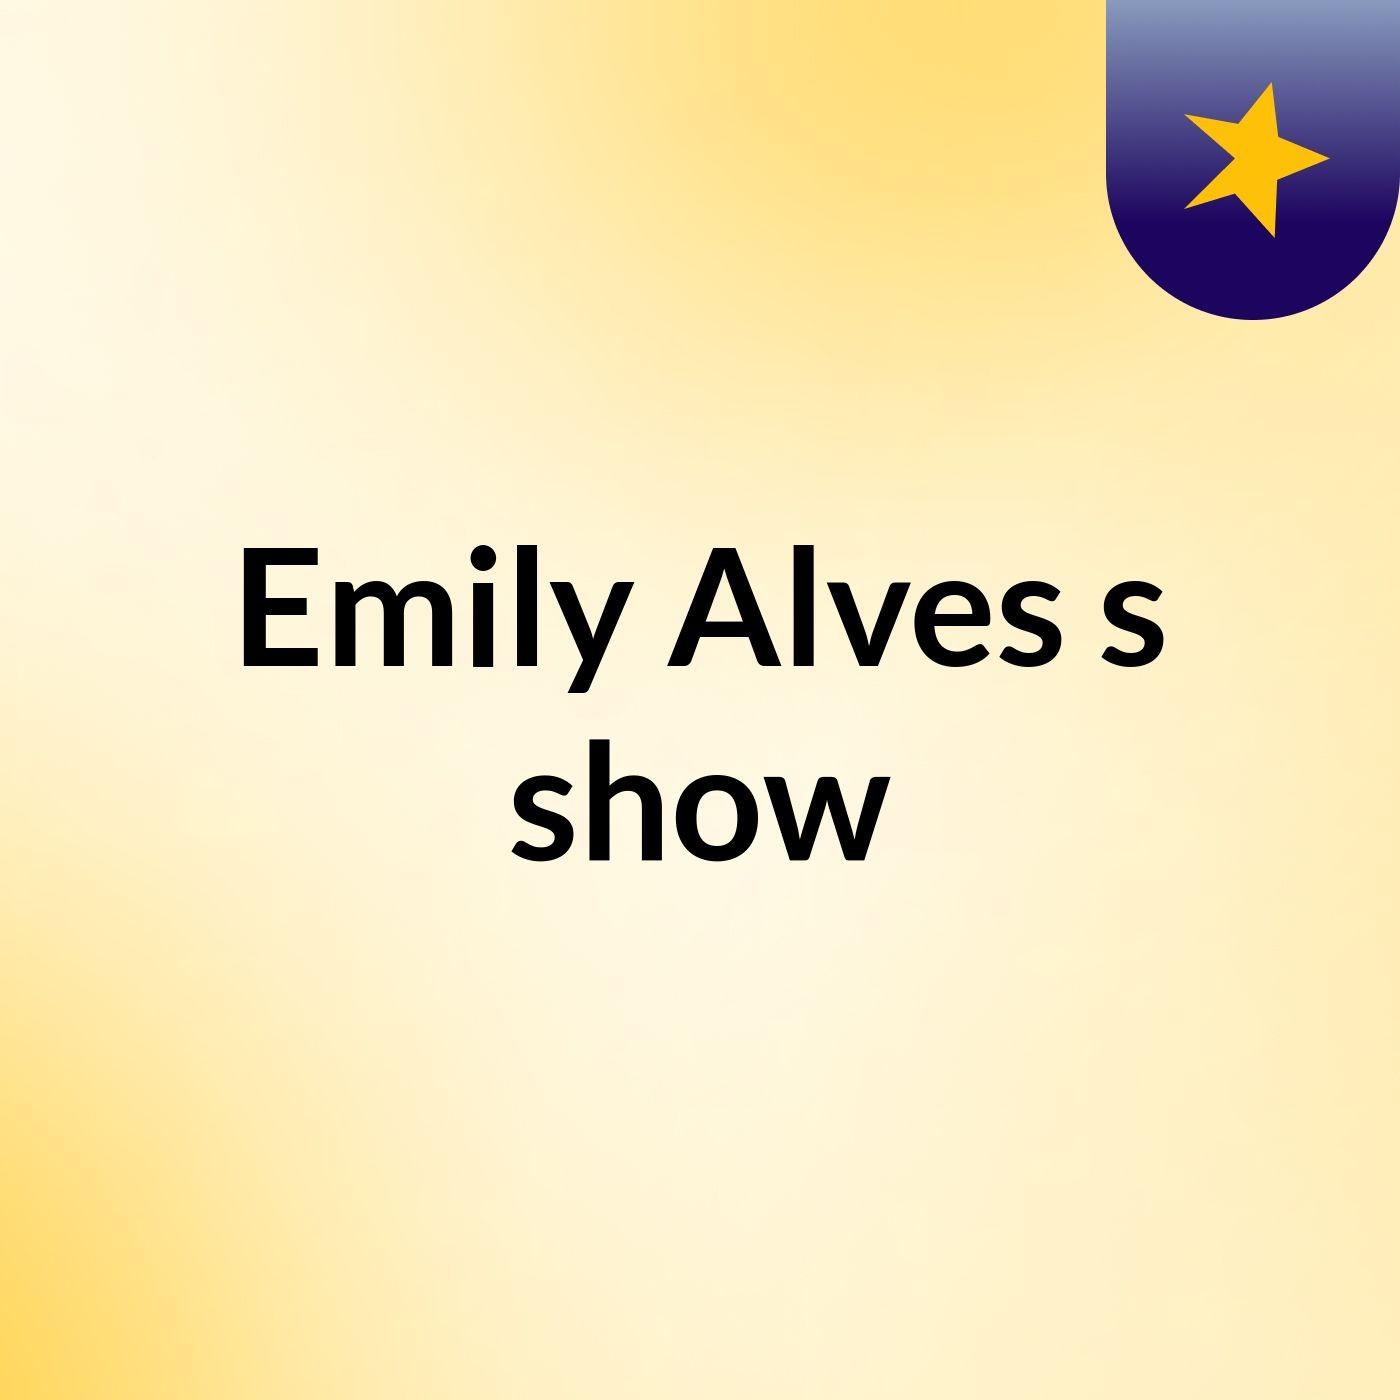 Emily Alves's show